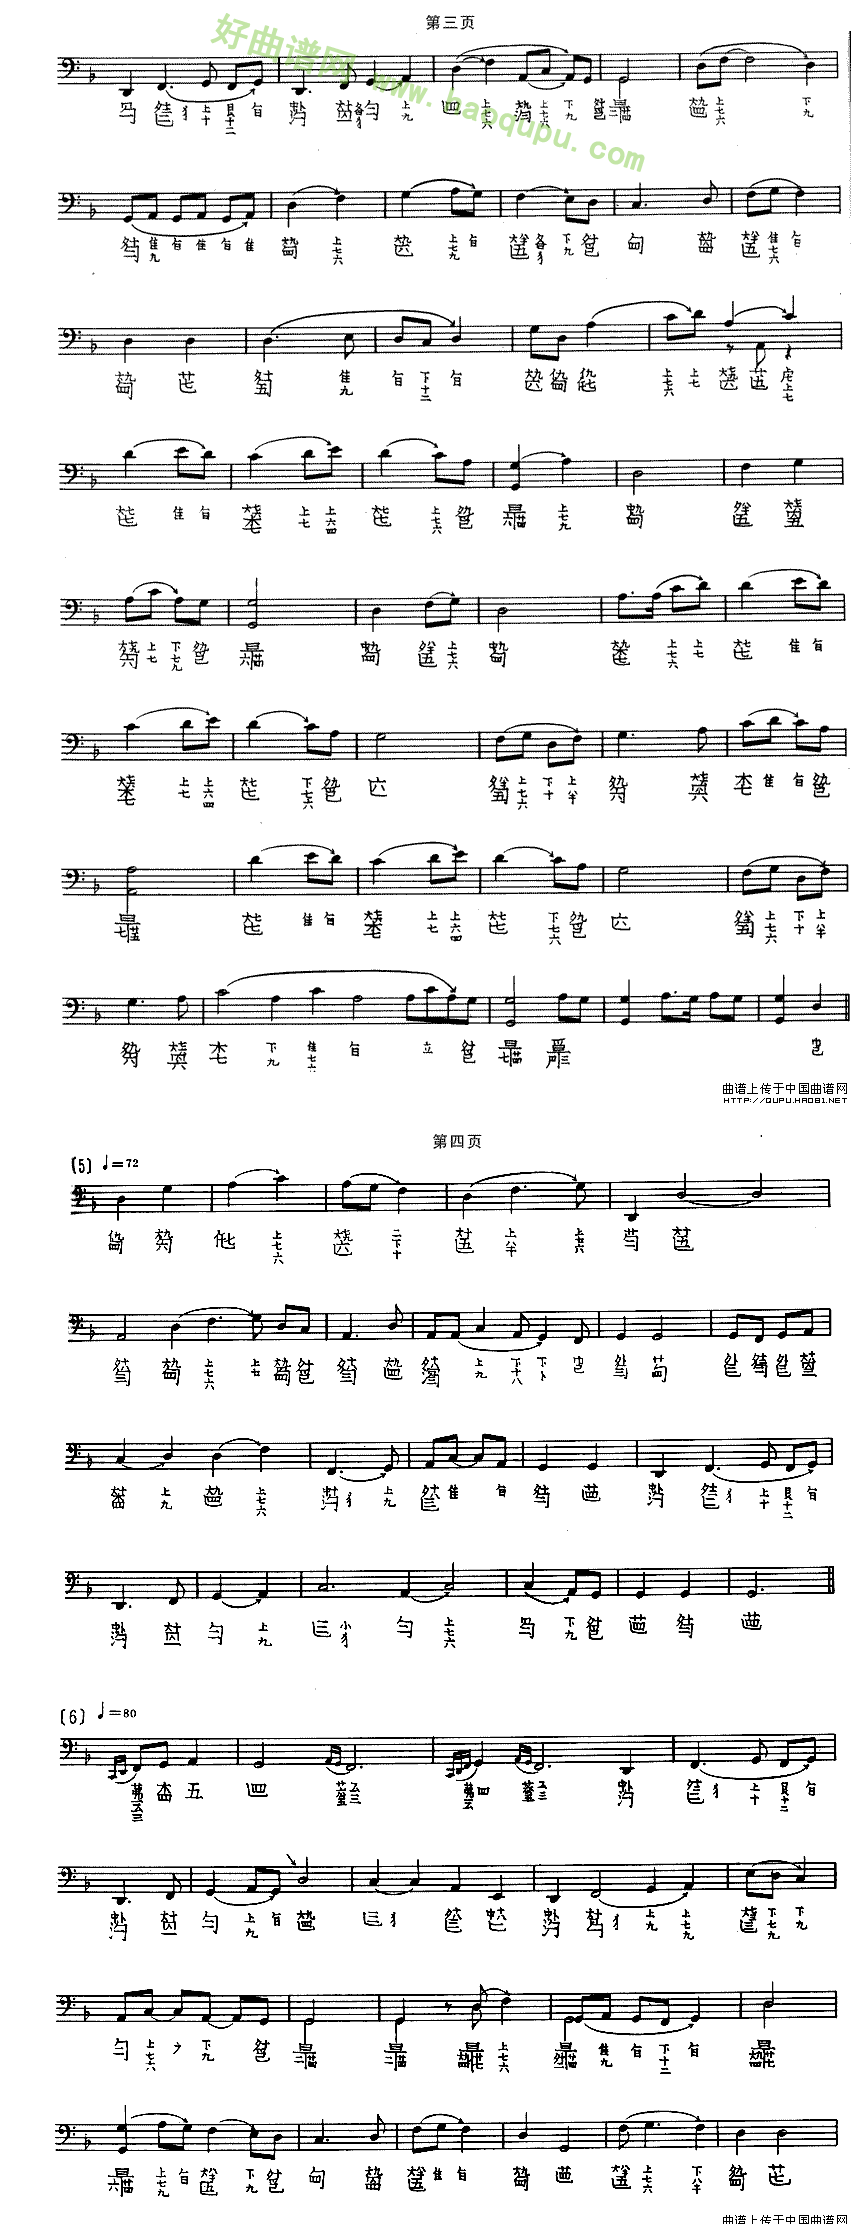 《渔歌》（吴兆基演奏版、古琴谱）古筝曲谱第2张